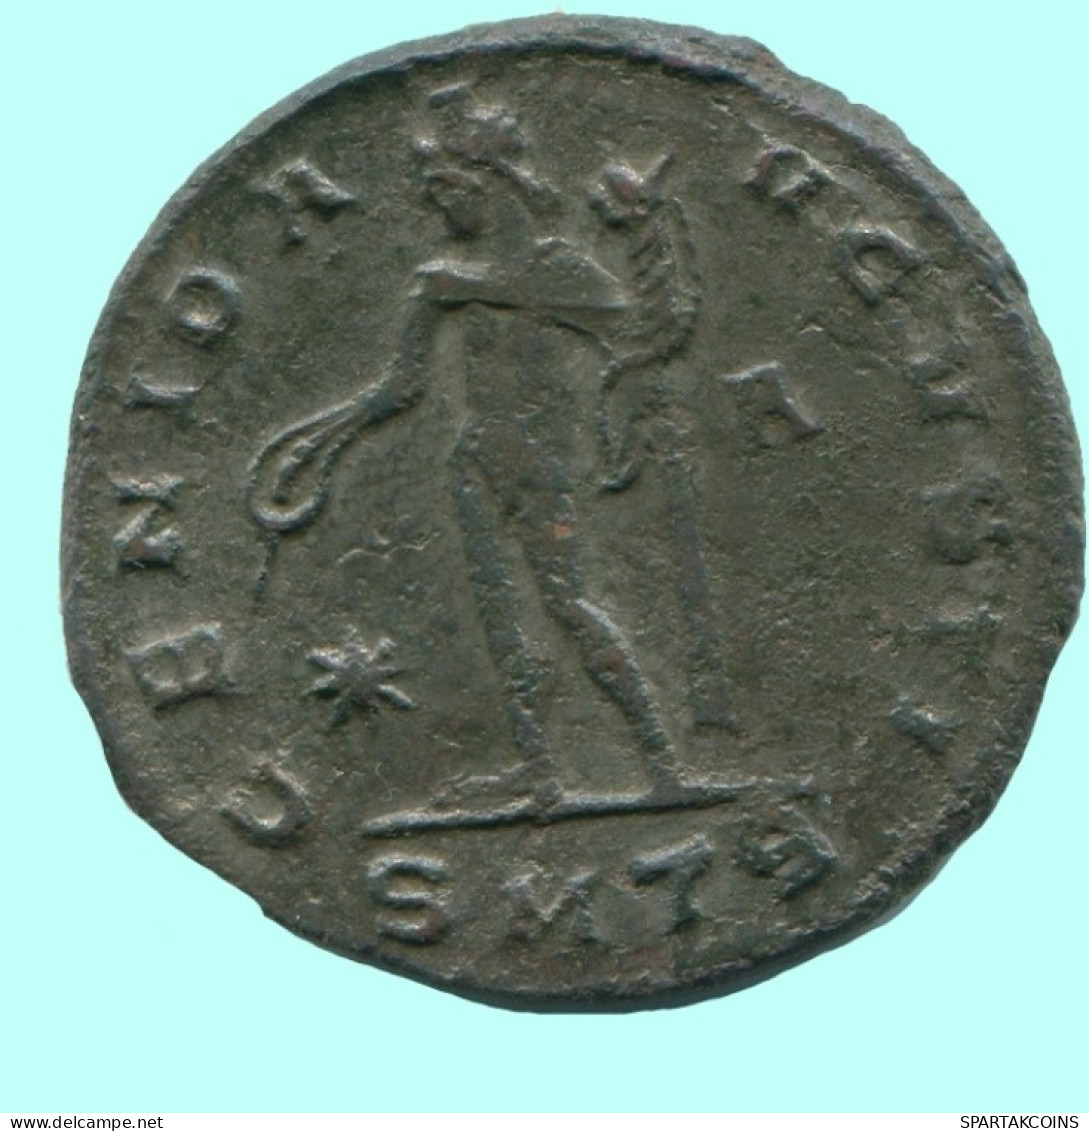 MAXIMIANUS II DAIA THESSALONICA AD 310 GENIO AVGVSTI 6.7g/26mm #ANC13101.80.E.A - La Tétrarchie (284 à 307)